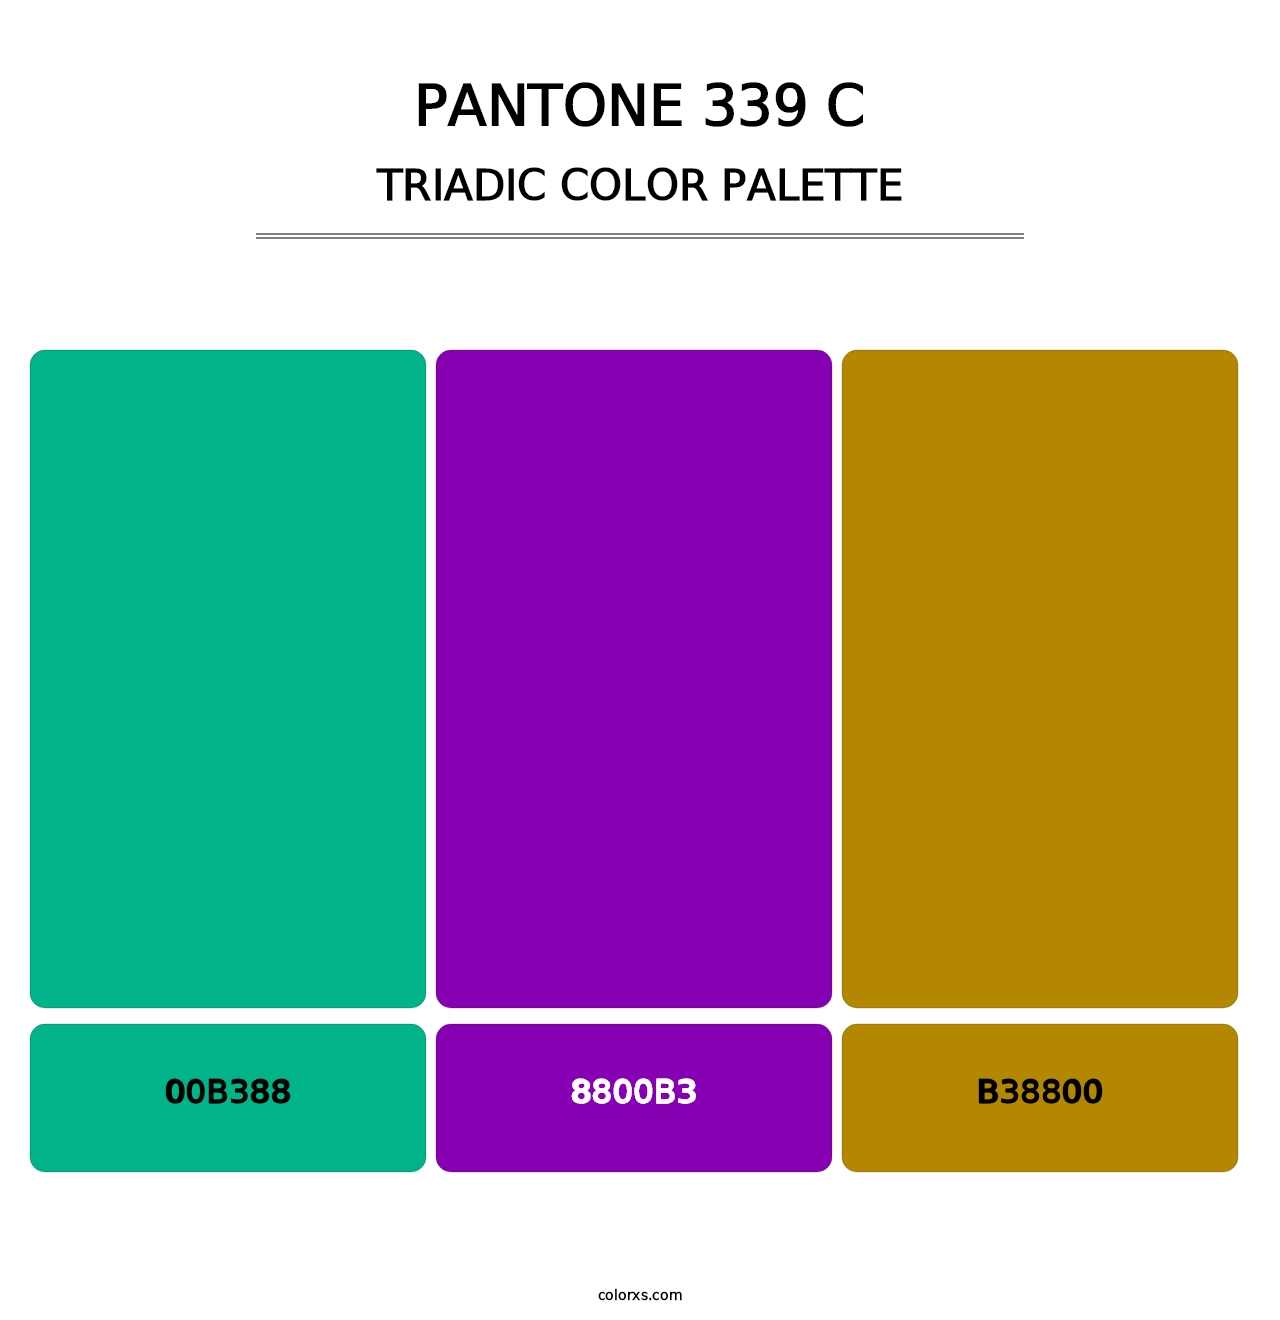 PANTONE 339 C - Triadic Color Palette